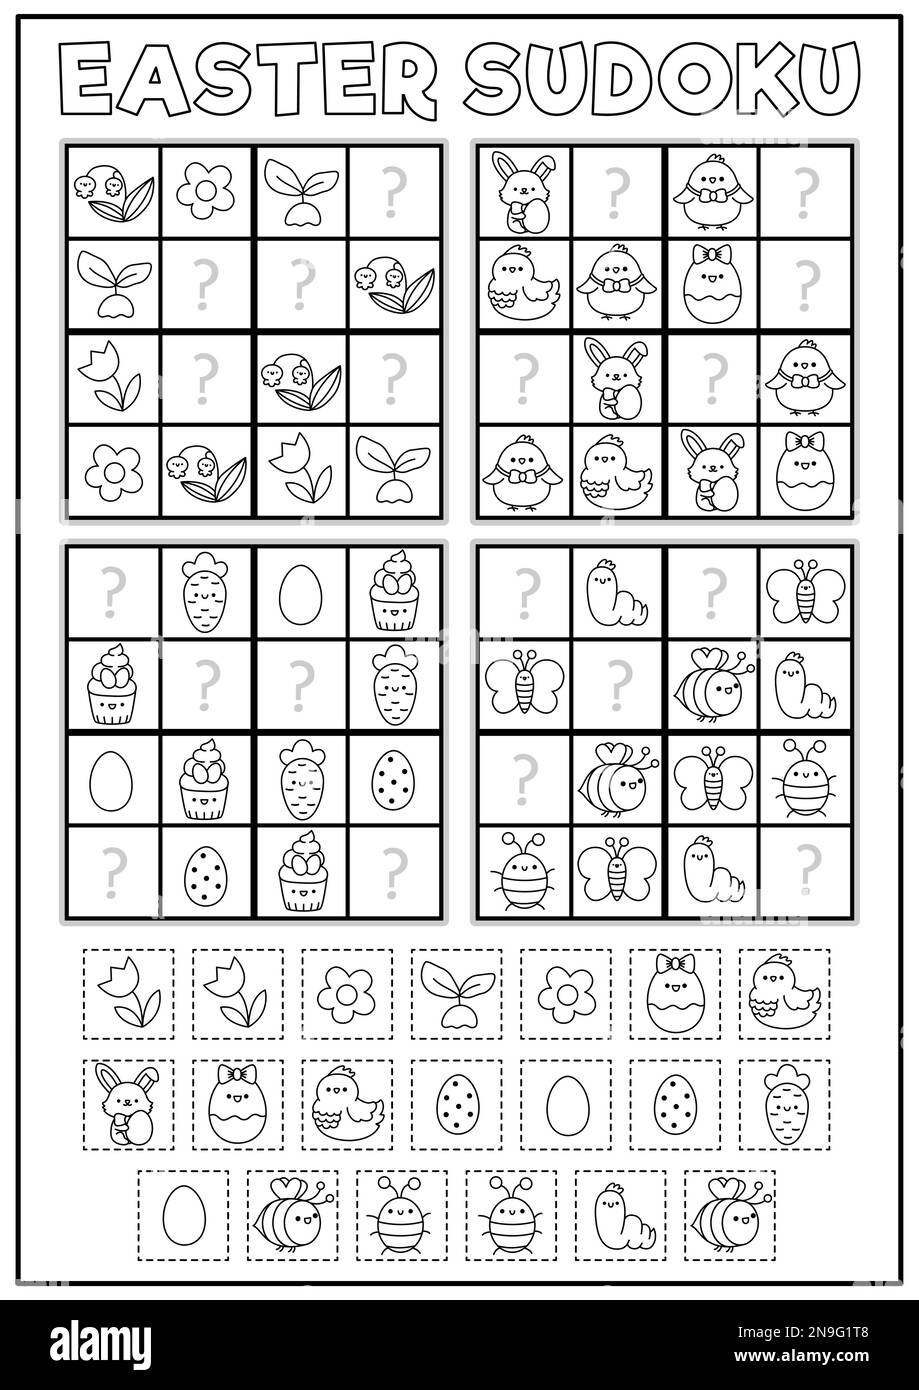 Vector Schwarz-Weiß-Kawaii-Ostersudoku-Puzzle für Kinder. Einfaches Quiz zum Frühjahrsfest mit Schneide- und Kleberelementen. Gartenlinie Aktivität oder Ausmalen p Stock Vektor